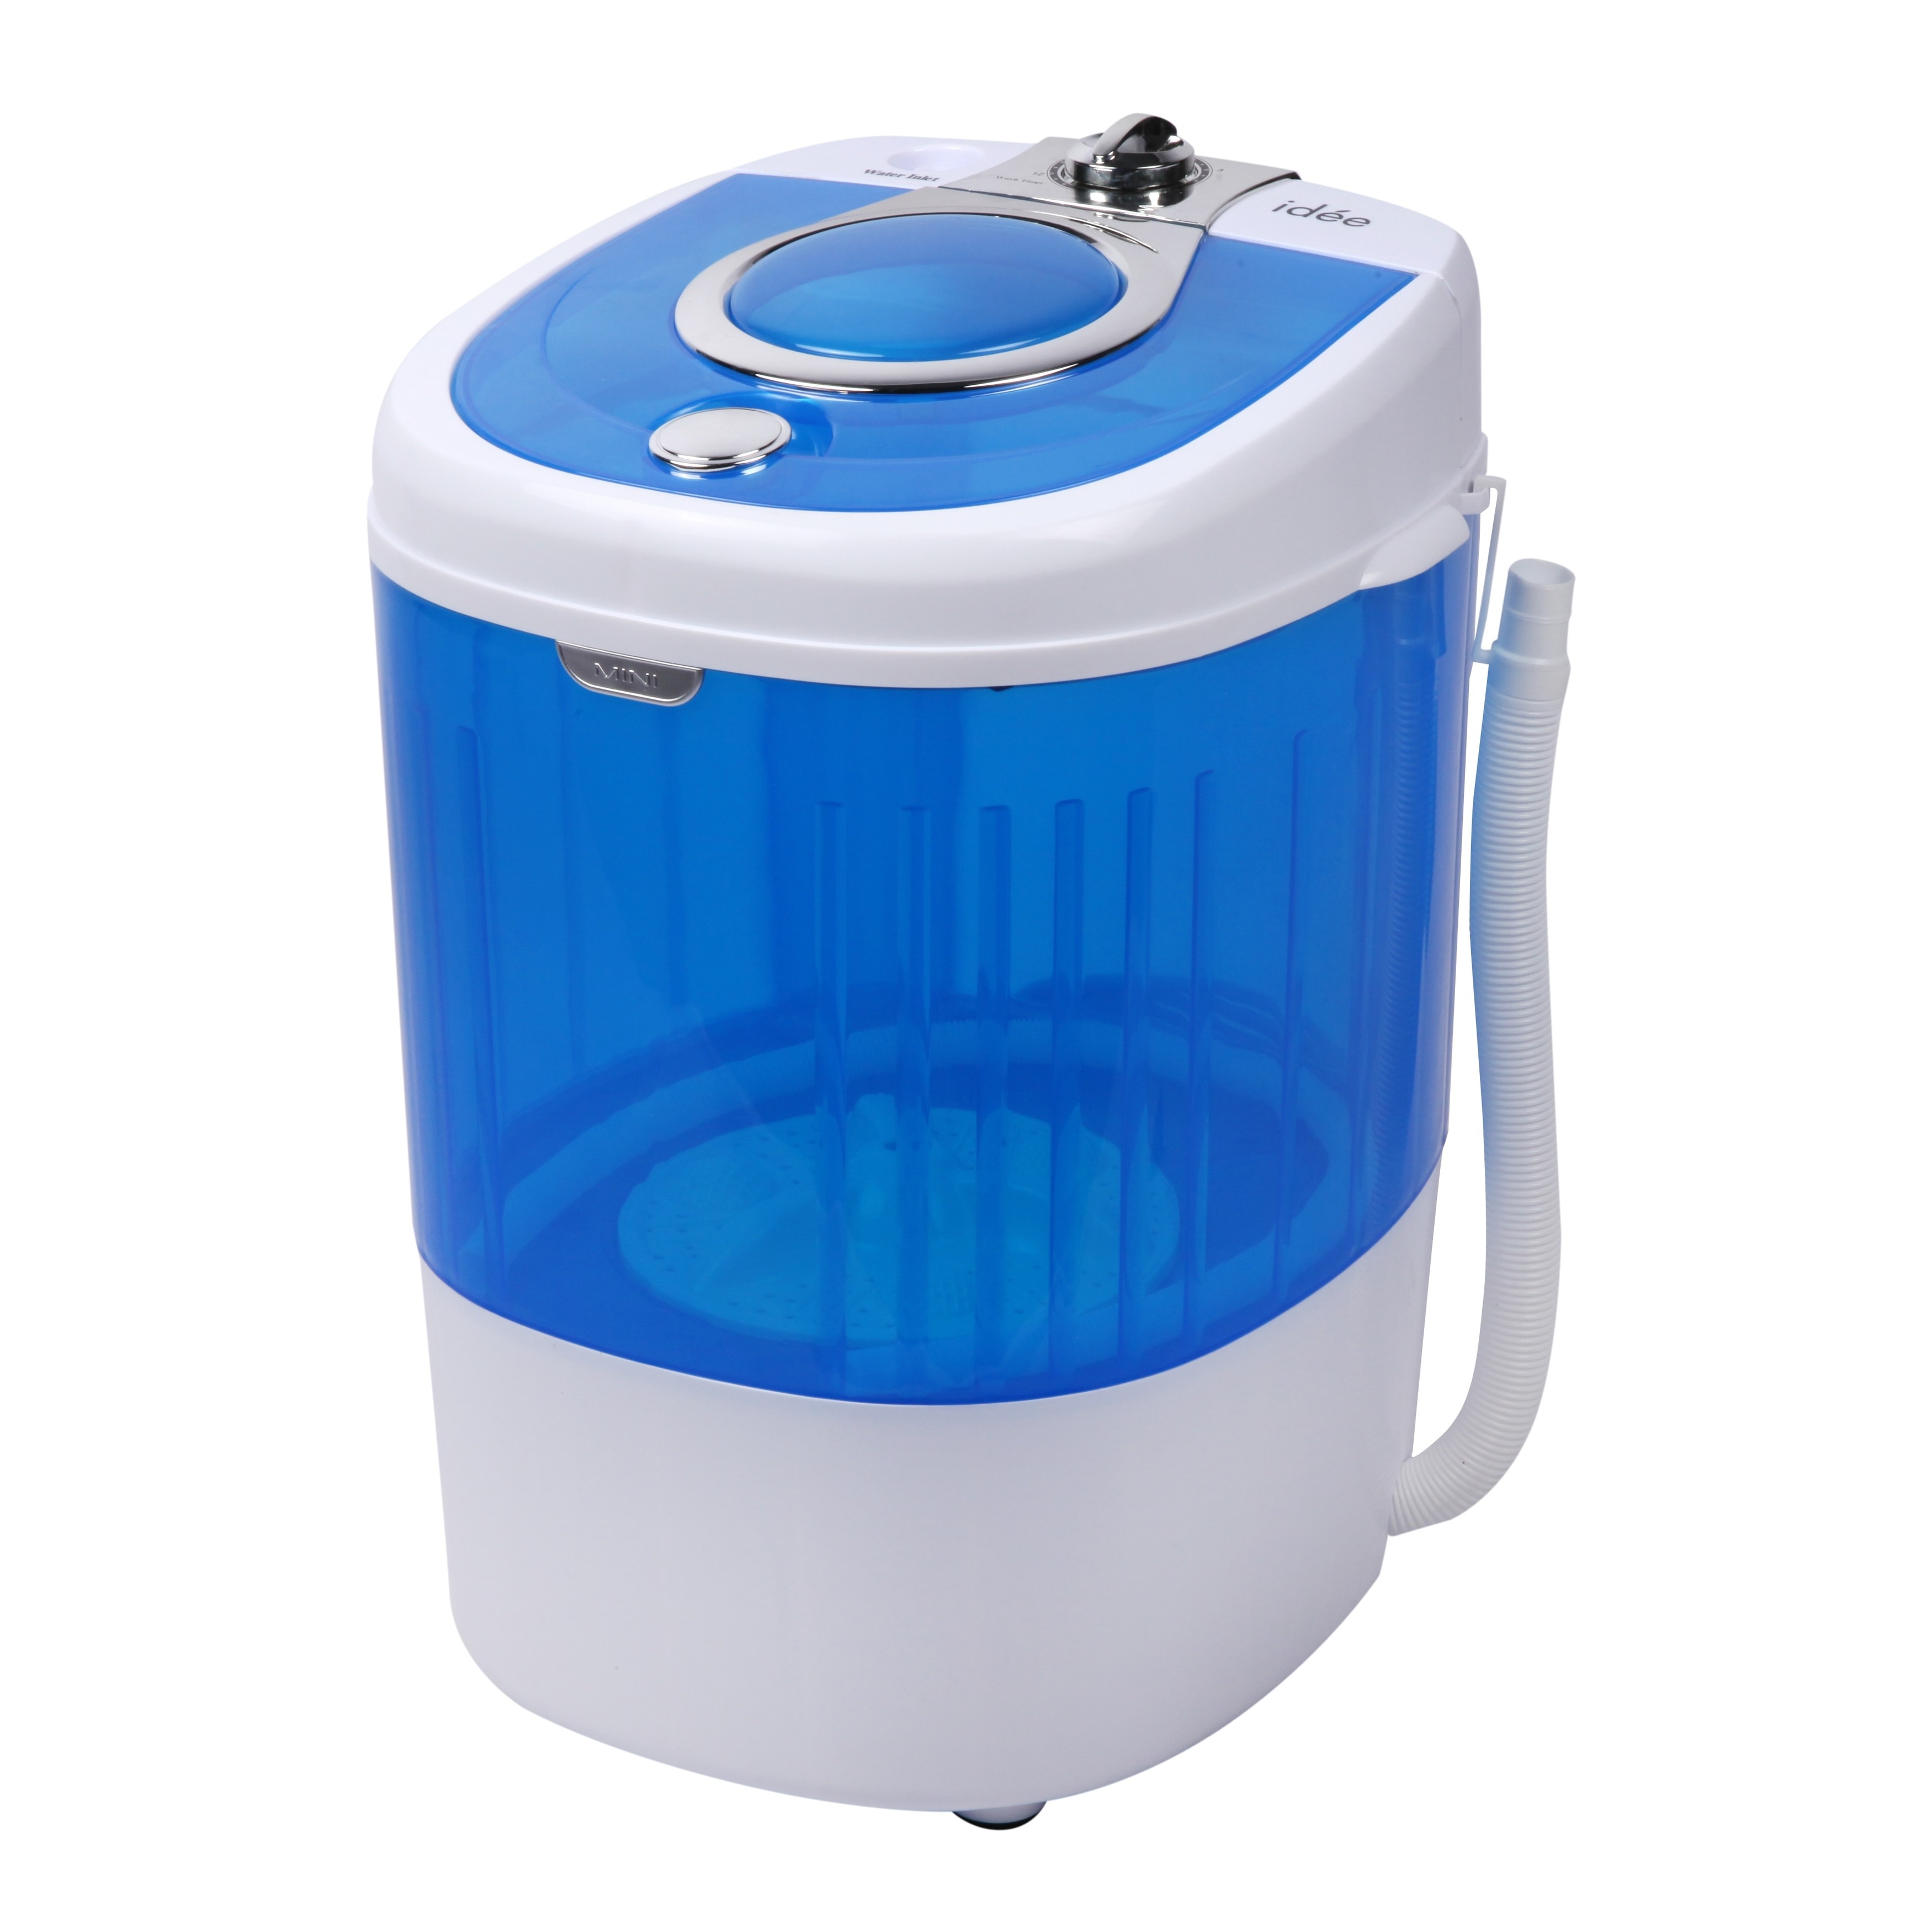 HCWM01WE 5.5 lb. Capacity Single-tub Semi-automatic Mini Portable Washing  Machine (As Is Item) - Bed Bath & Beyond - 21872394